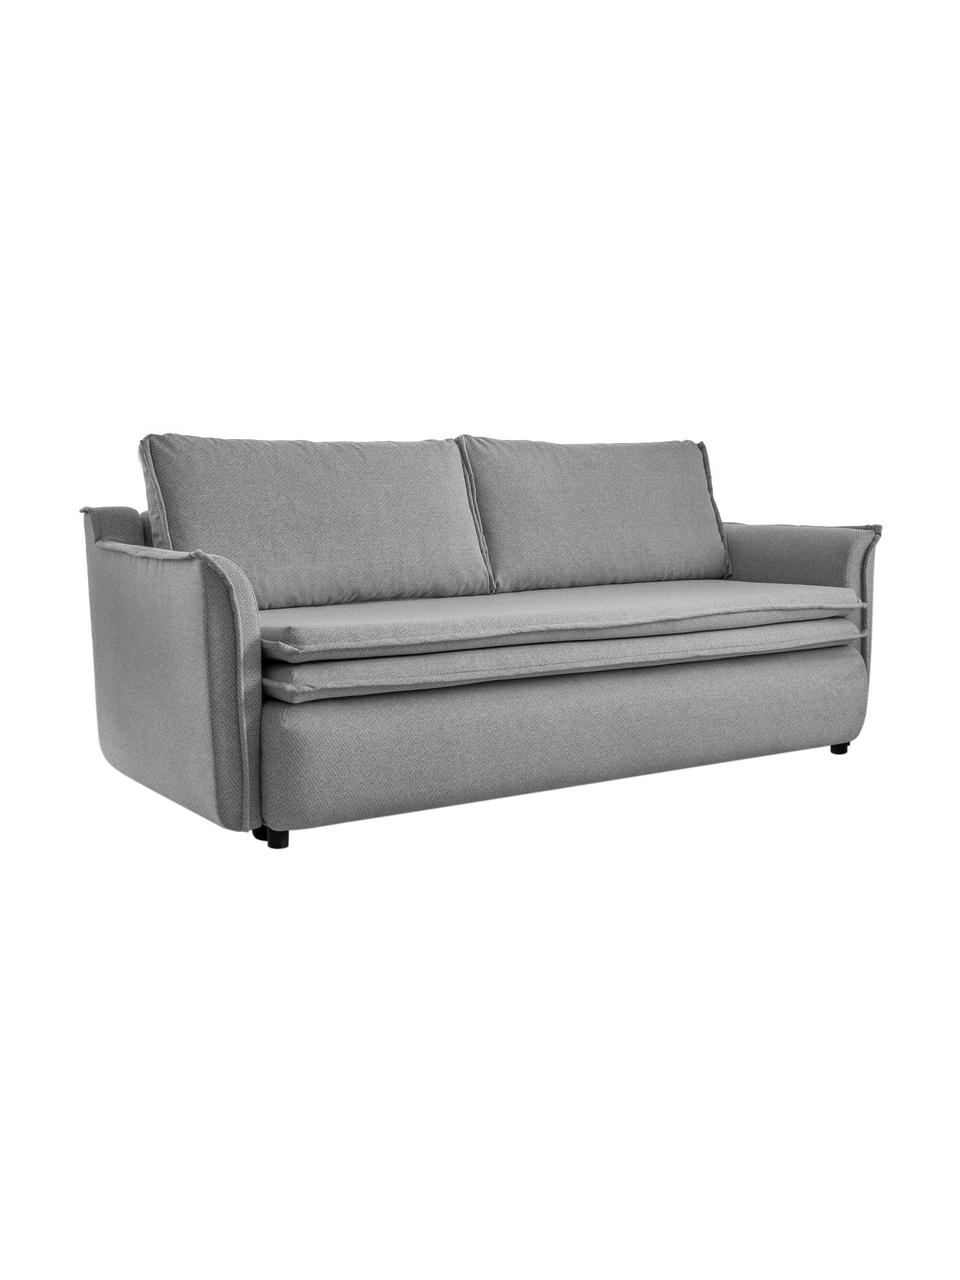 Sofa rozkładana z miejscem do przechowywania Charming Charlie, Szary, S 225 x G 85 cm